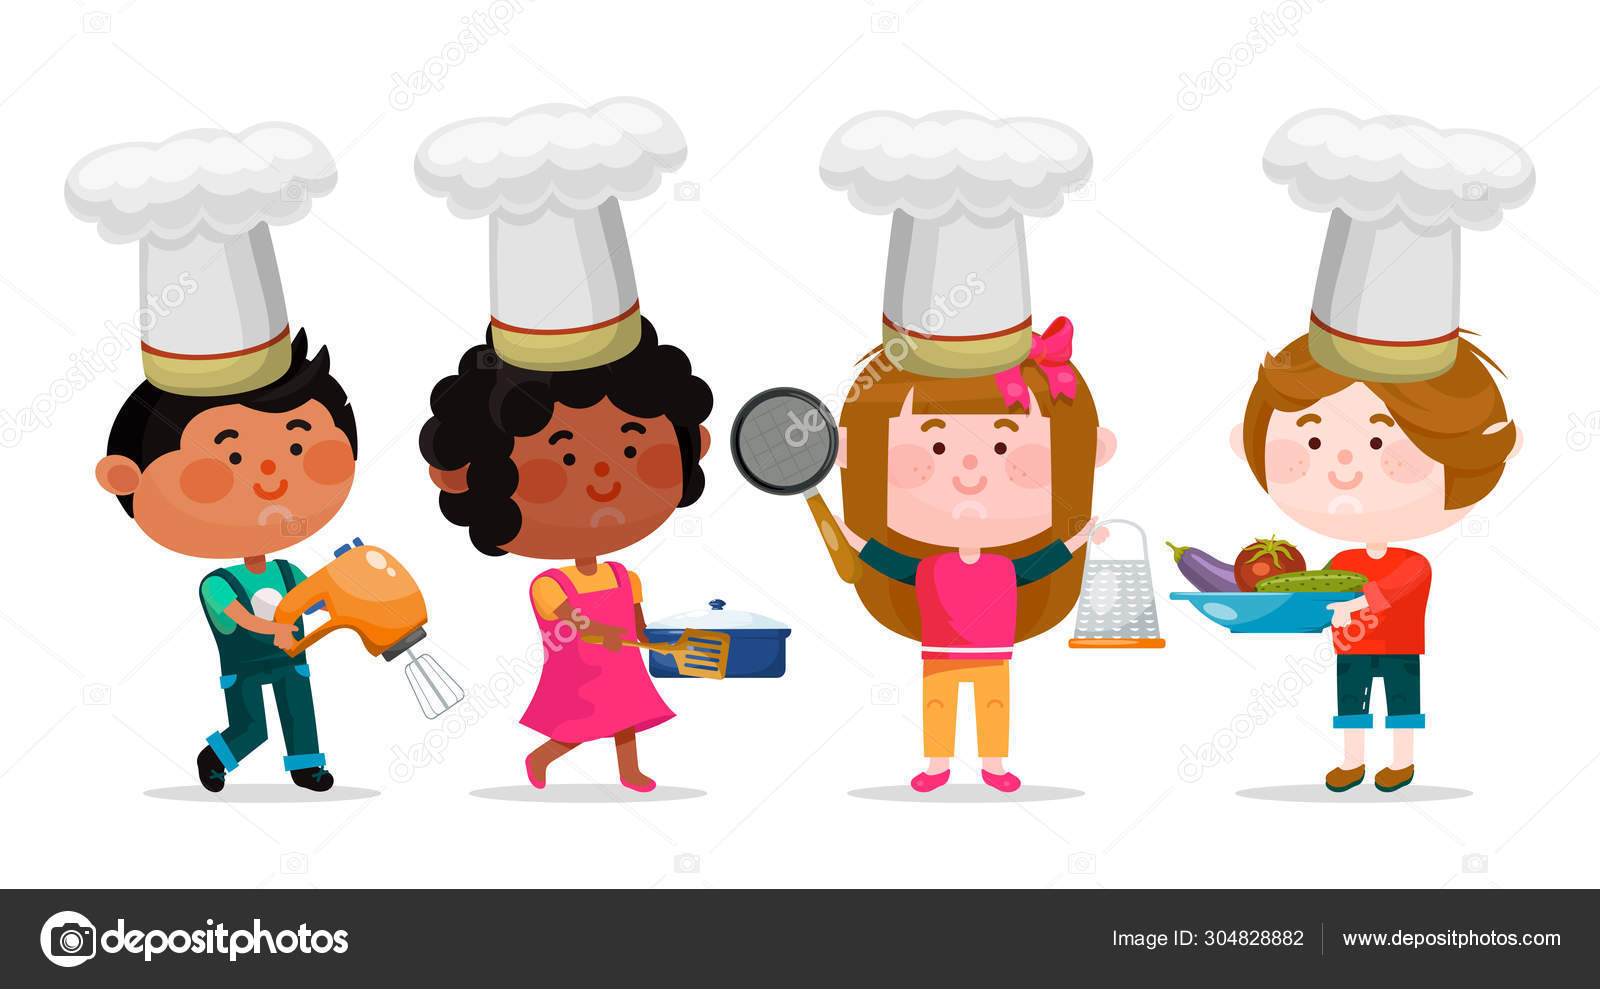 https://st4.depositphotos.com/10665628/30482/v/1600/depositphotos_304828882-stock-illustration-little-chefs-in-hats-set.jpg